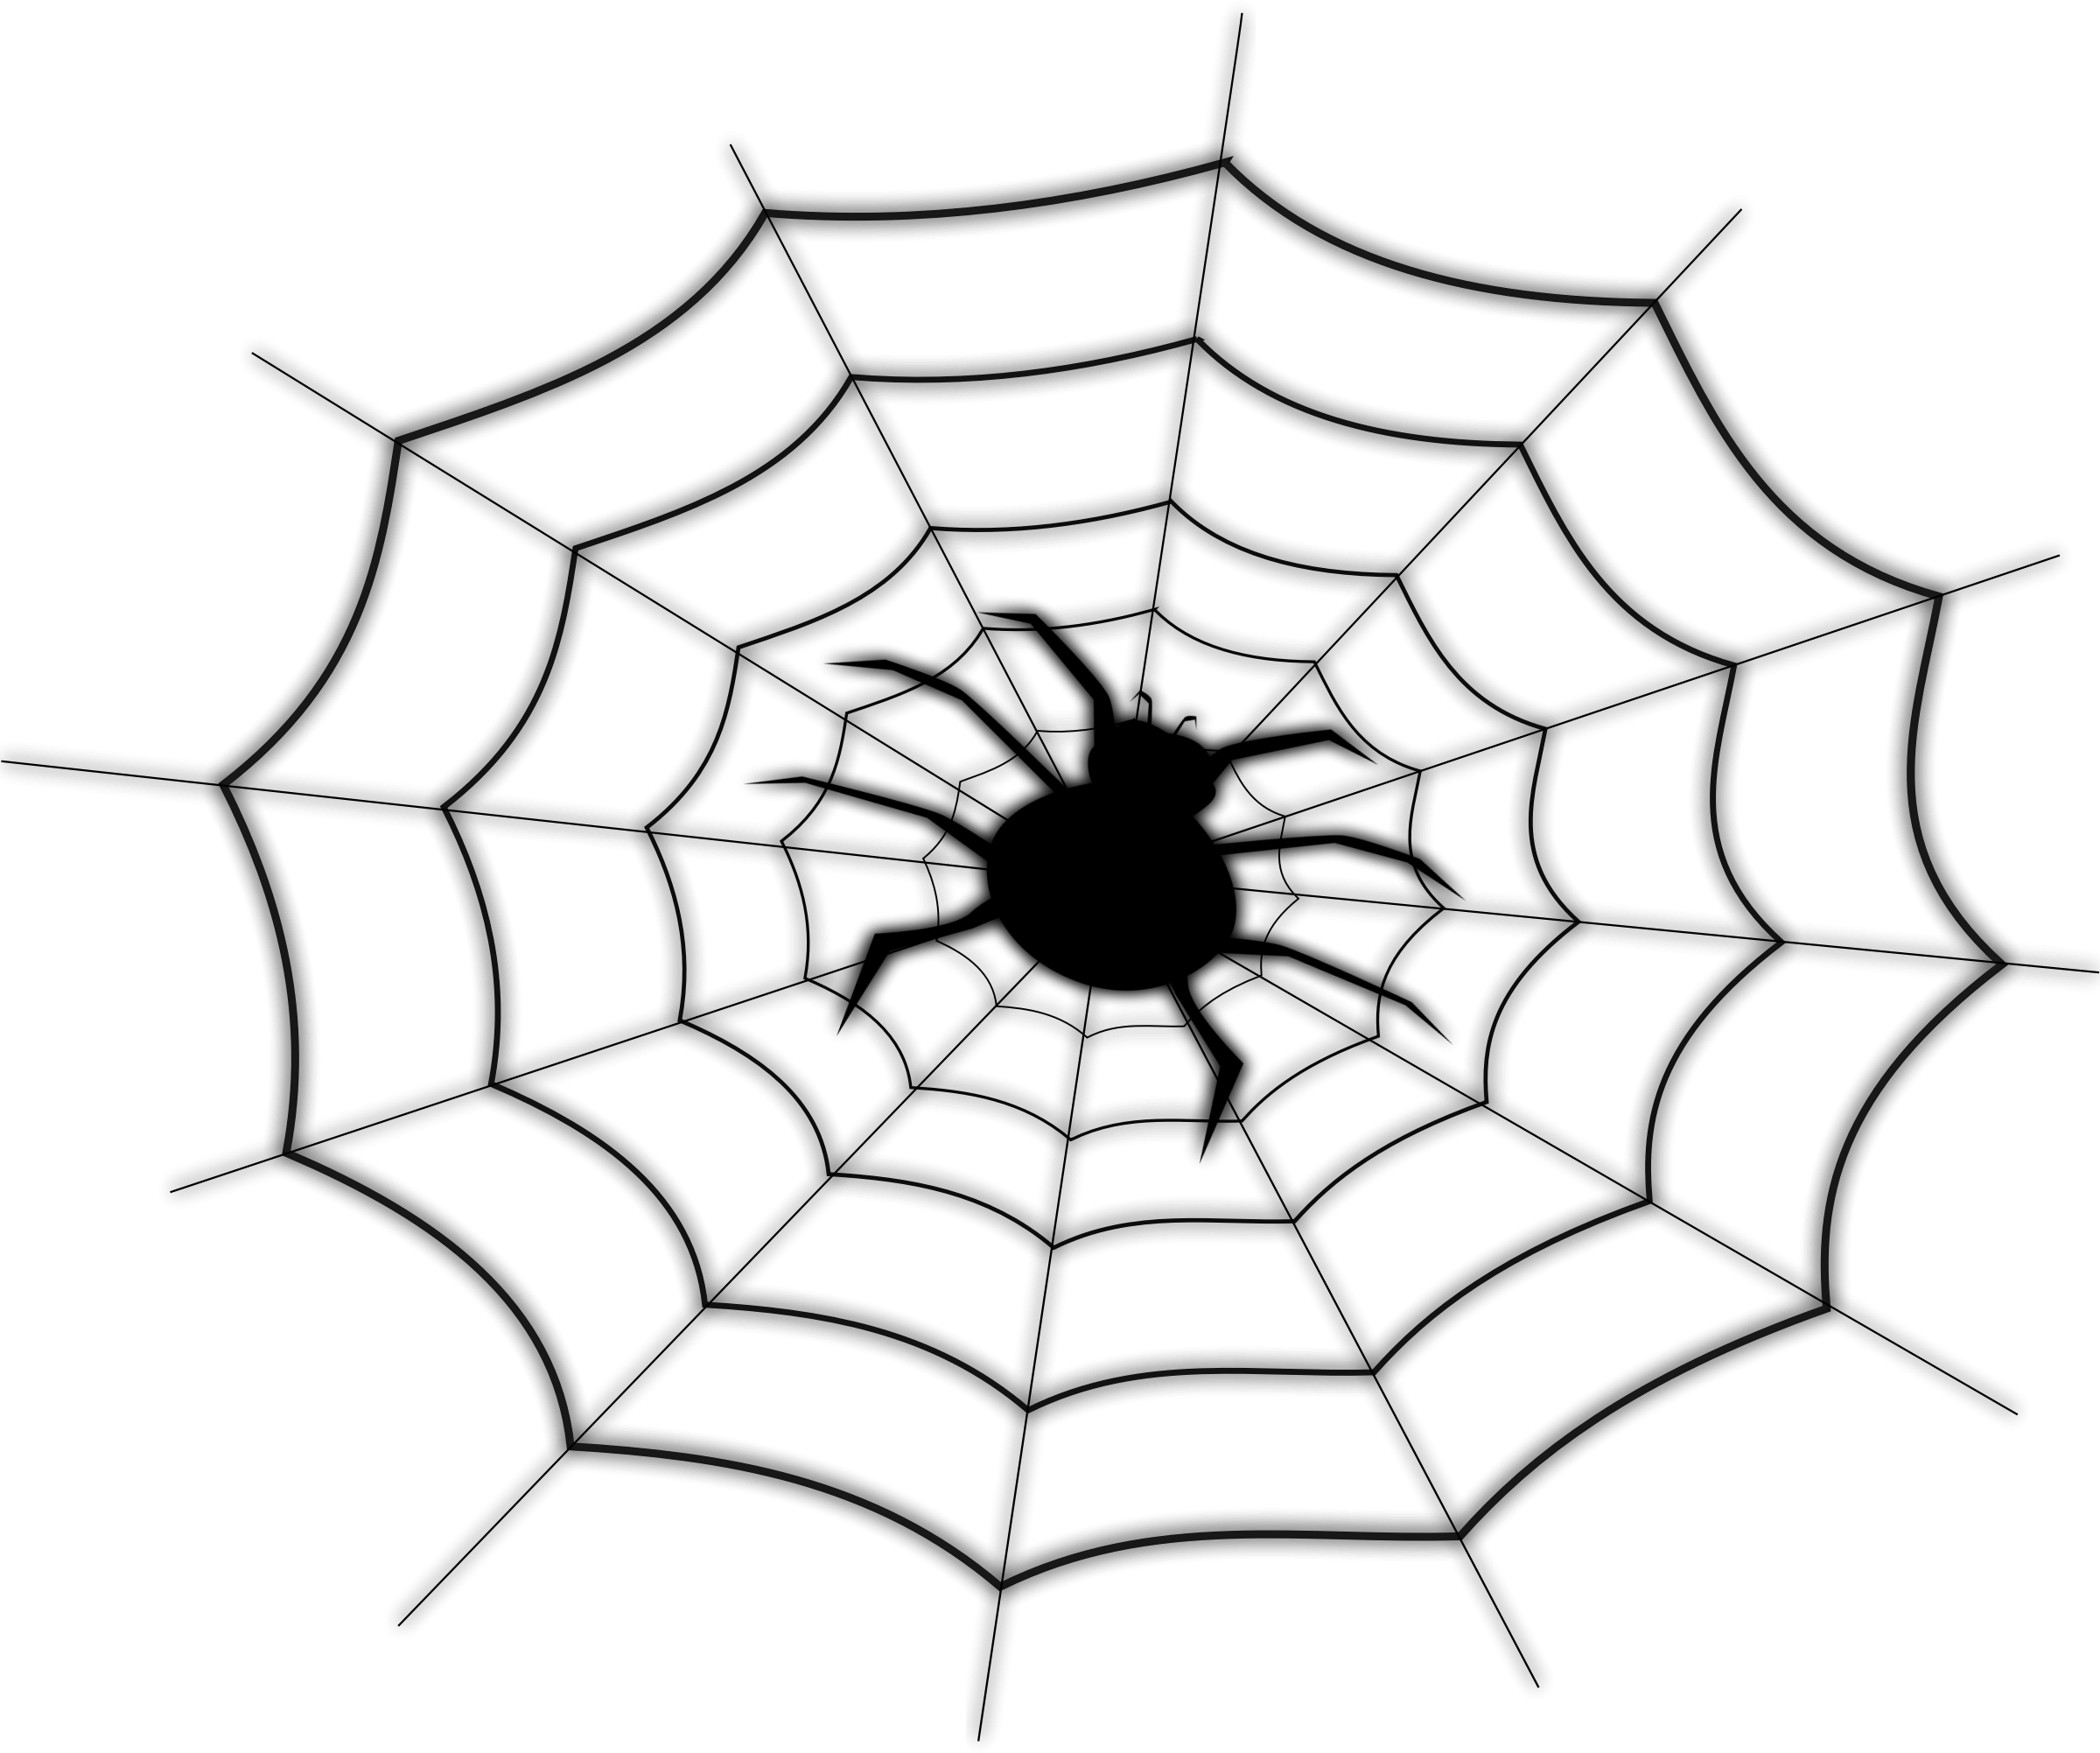 On Spider Net - Spider Web Shower Curtain (2400x2003)